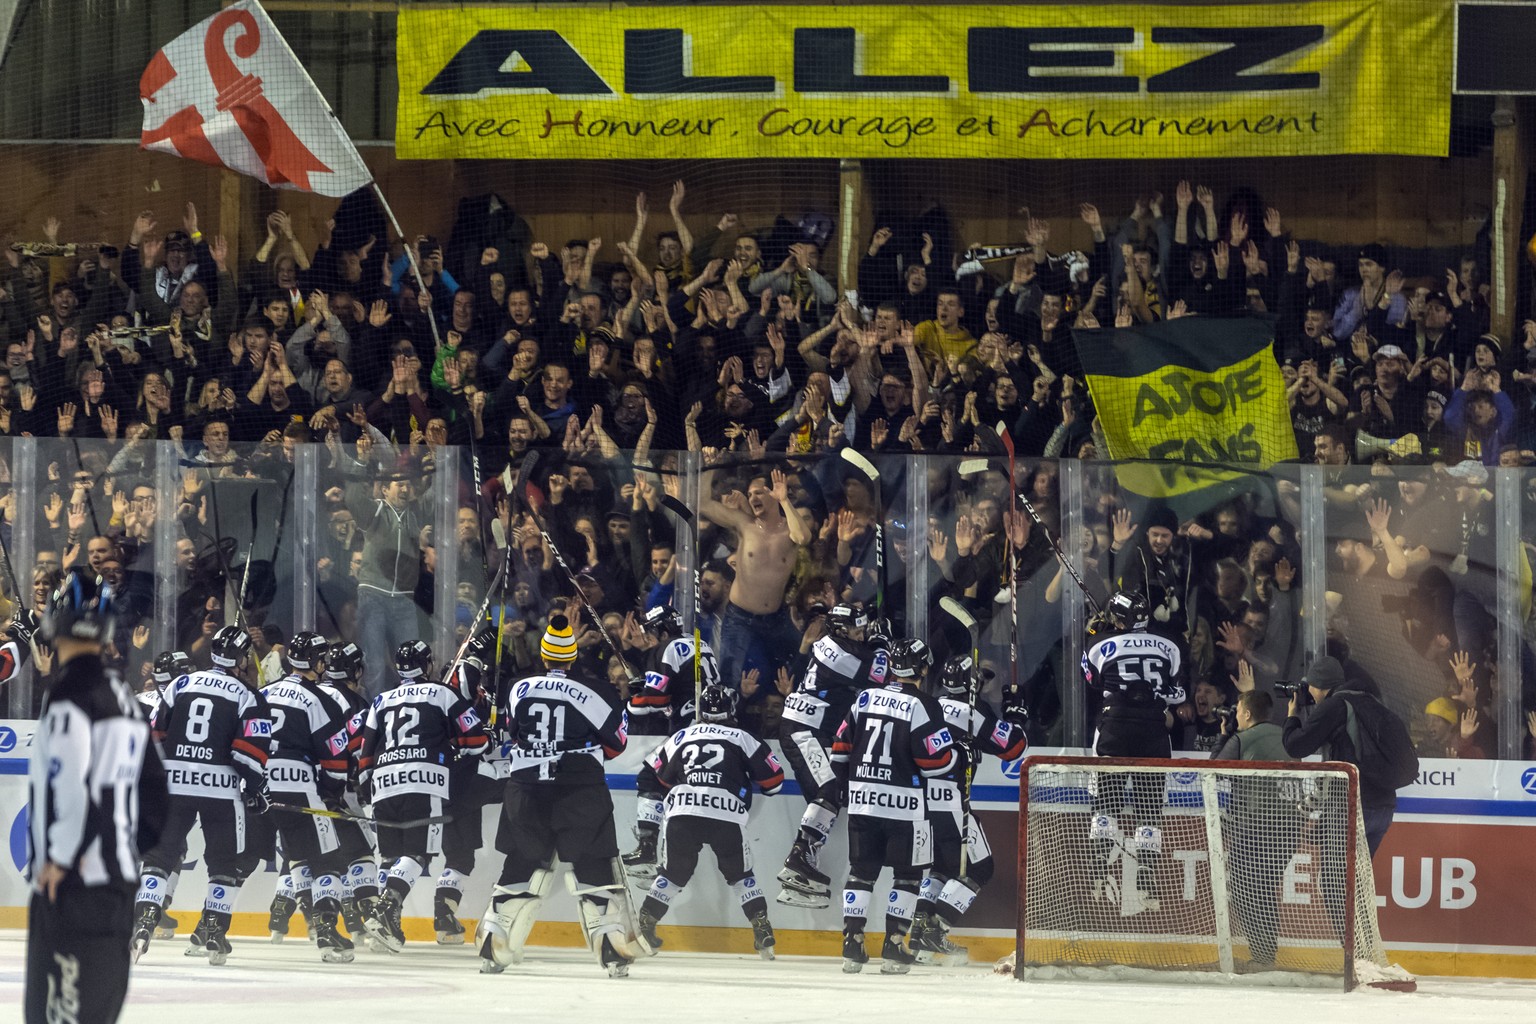 Ajoies Spieler jubeln mit den Fans nach dem Sieg im Swiss Ice Hockey Cup Halbfinale zwischen dem HC Ajoie und dem EHC Biel-Bienne in der Patiniore du Voyeboeuf in Porrentruy am Sonntag, 15. Dezember 2 ...